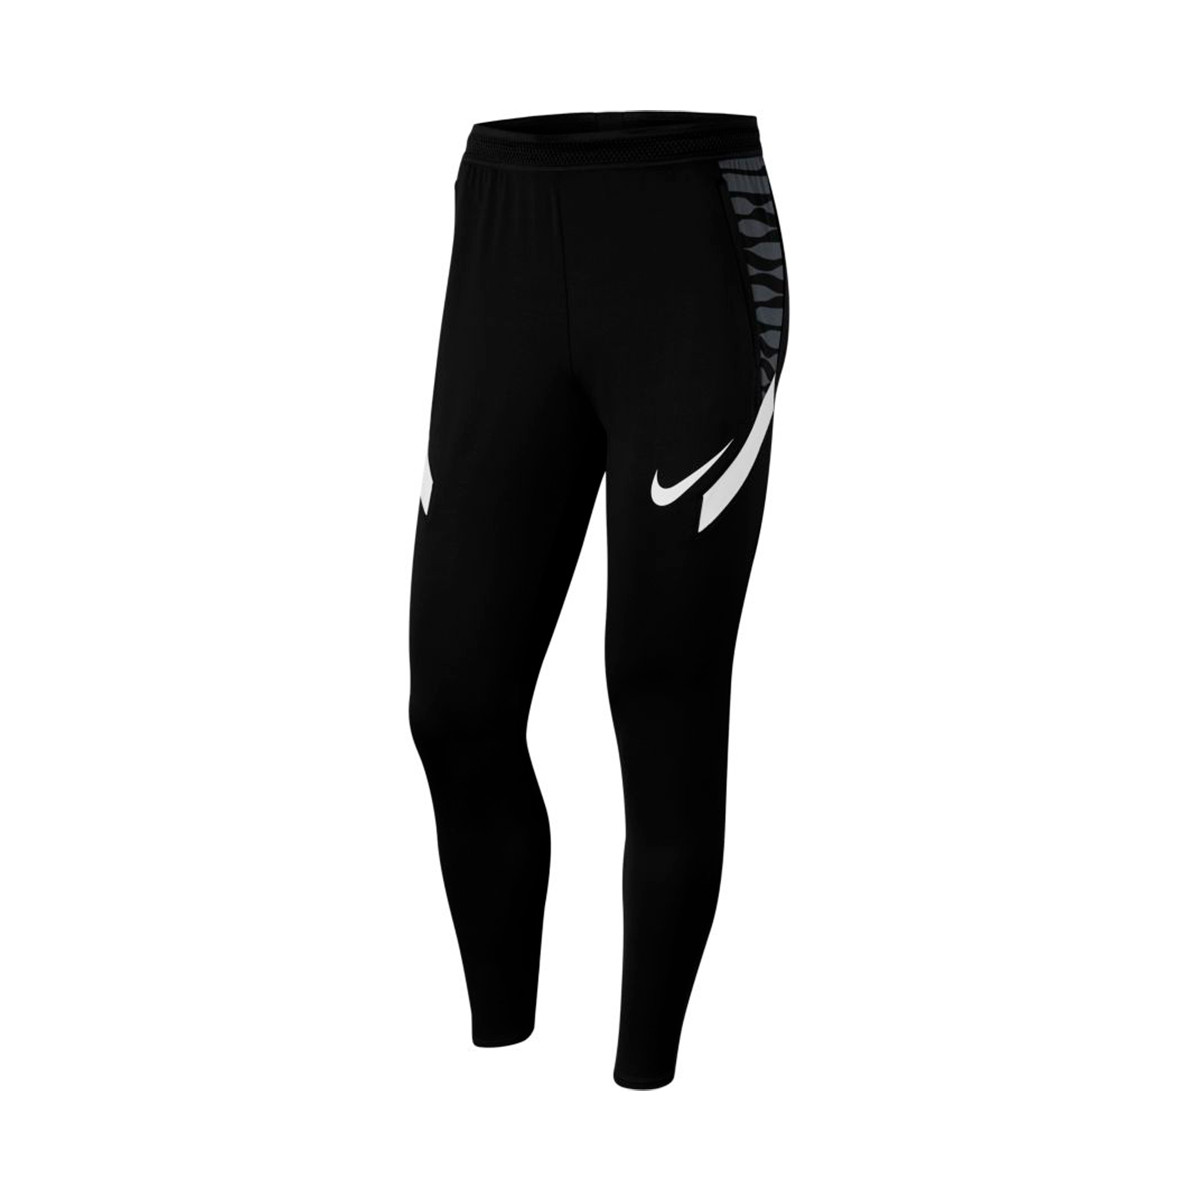 Pantalón largo Nike Strike Kpz Black-Anthracite-White -